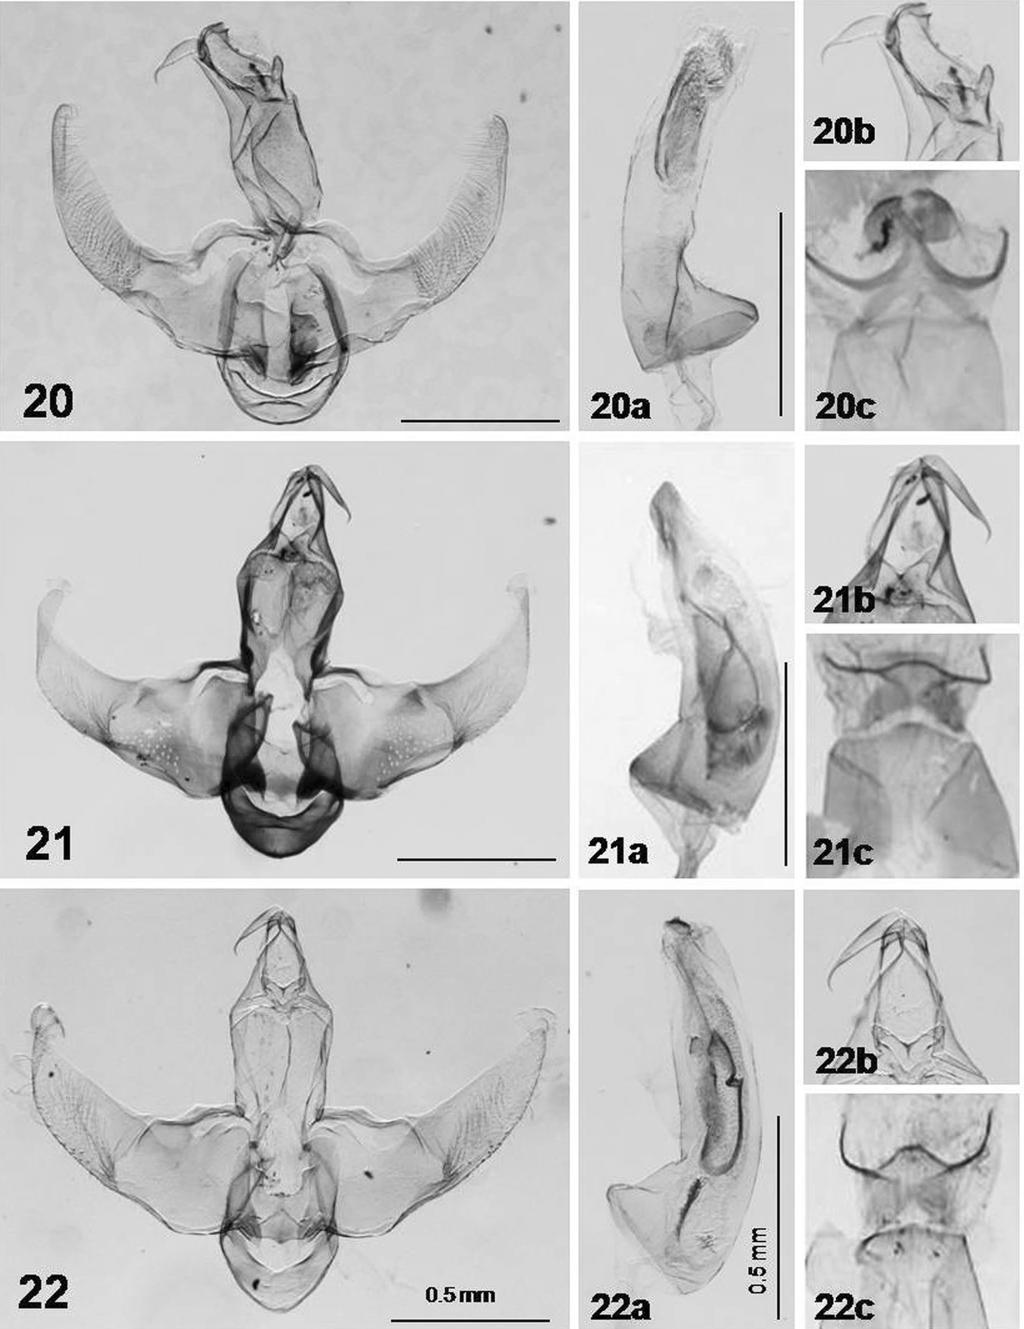 68 TROP. LEPID. RES., 20(2):62-70, 2010 Figs. 20-22. Male genitalia of Lecithocera species (a: close-up uncus+gnathos part; b, aedeagus; c: 8 th segment): 20. L. squalida Gozmány; 21. L.poculata sp.